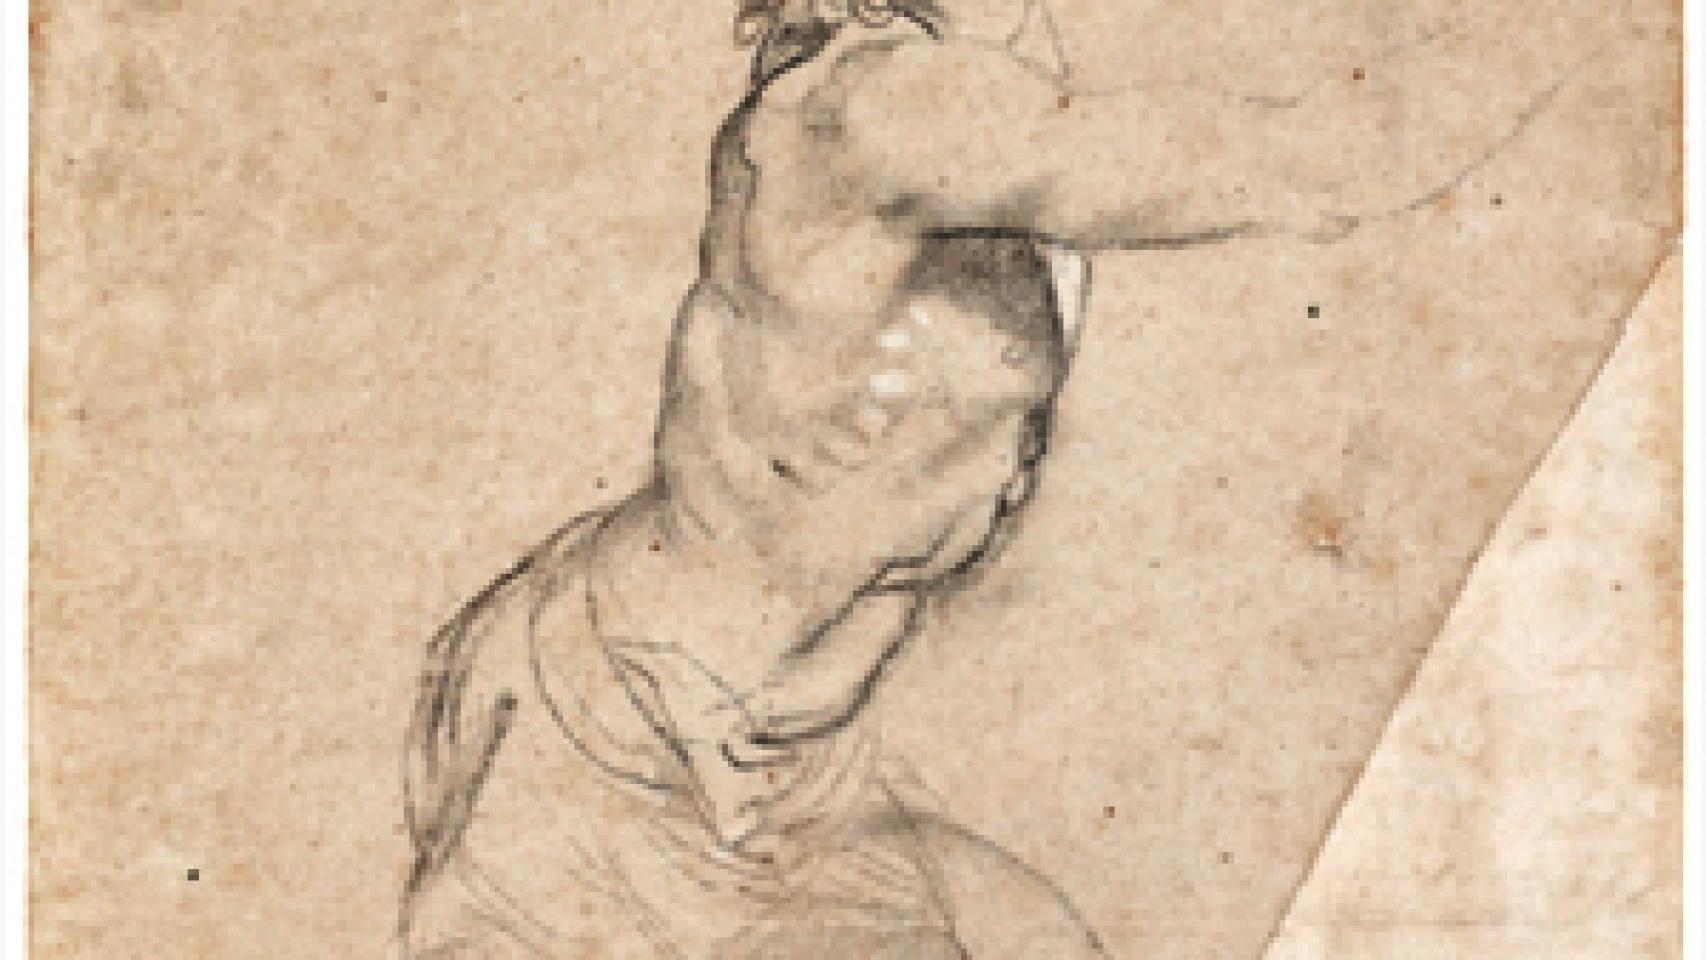 Image: Subastado por 7 millones de euros un dibujo de Rubens propiedad de la familia real neerlandesa